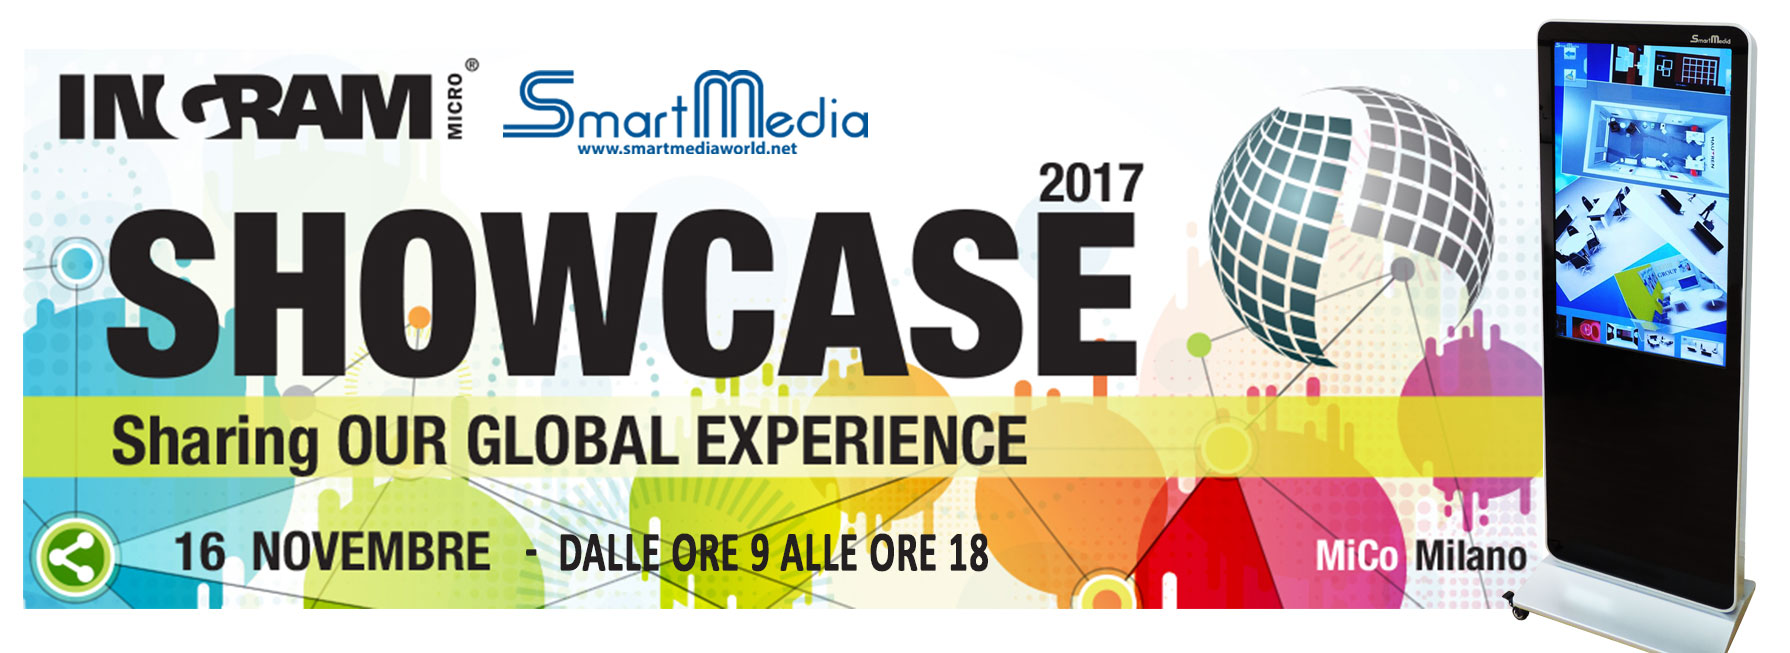 ShowCase 2017 IngramMicro con SmartMedia - prodotti Interattivi Multi-touch education e Corporate